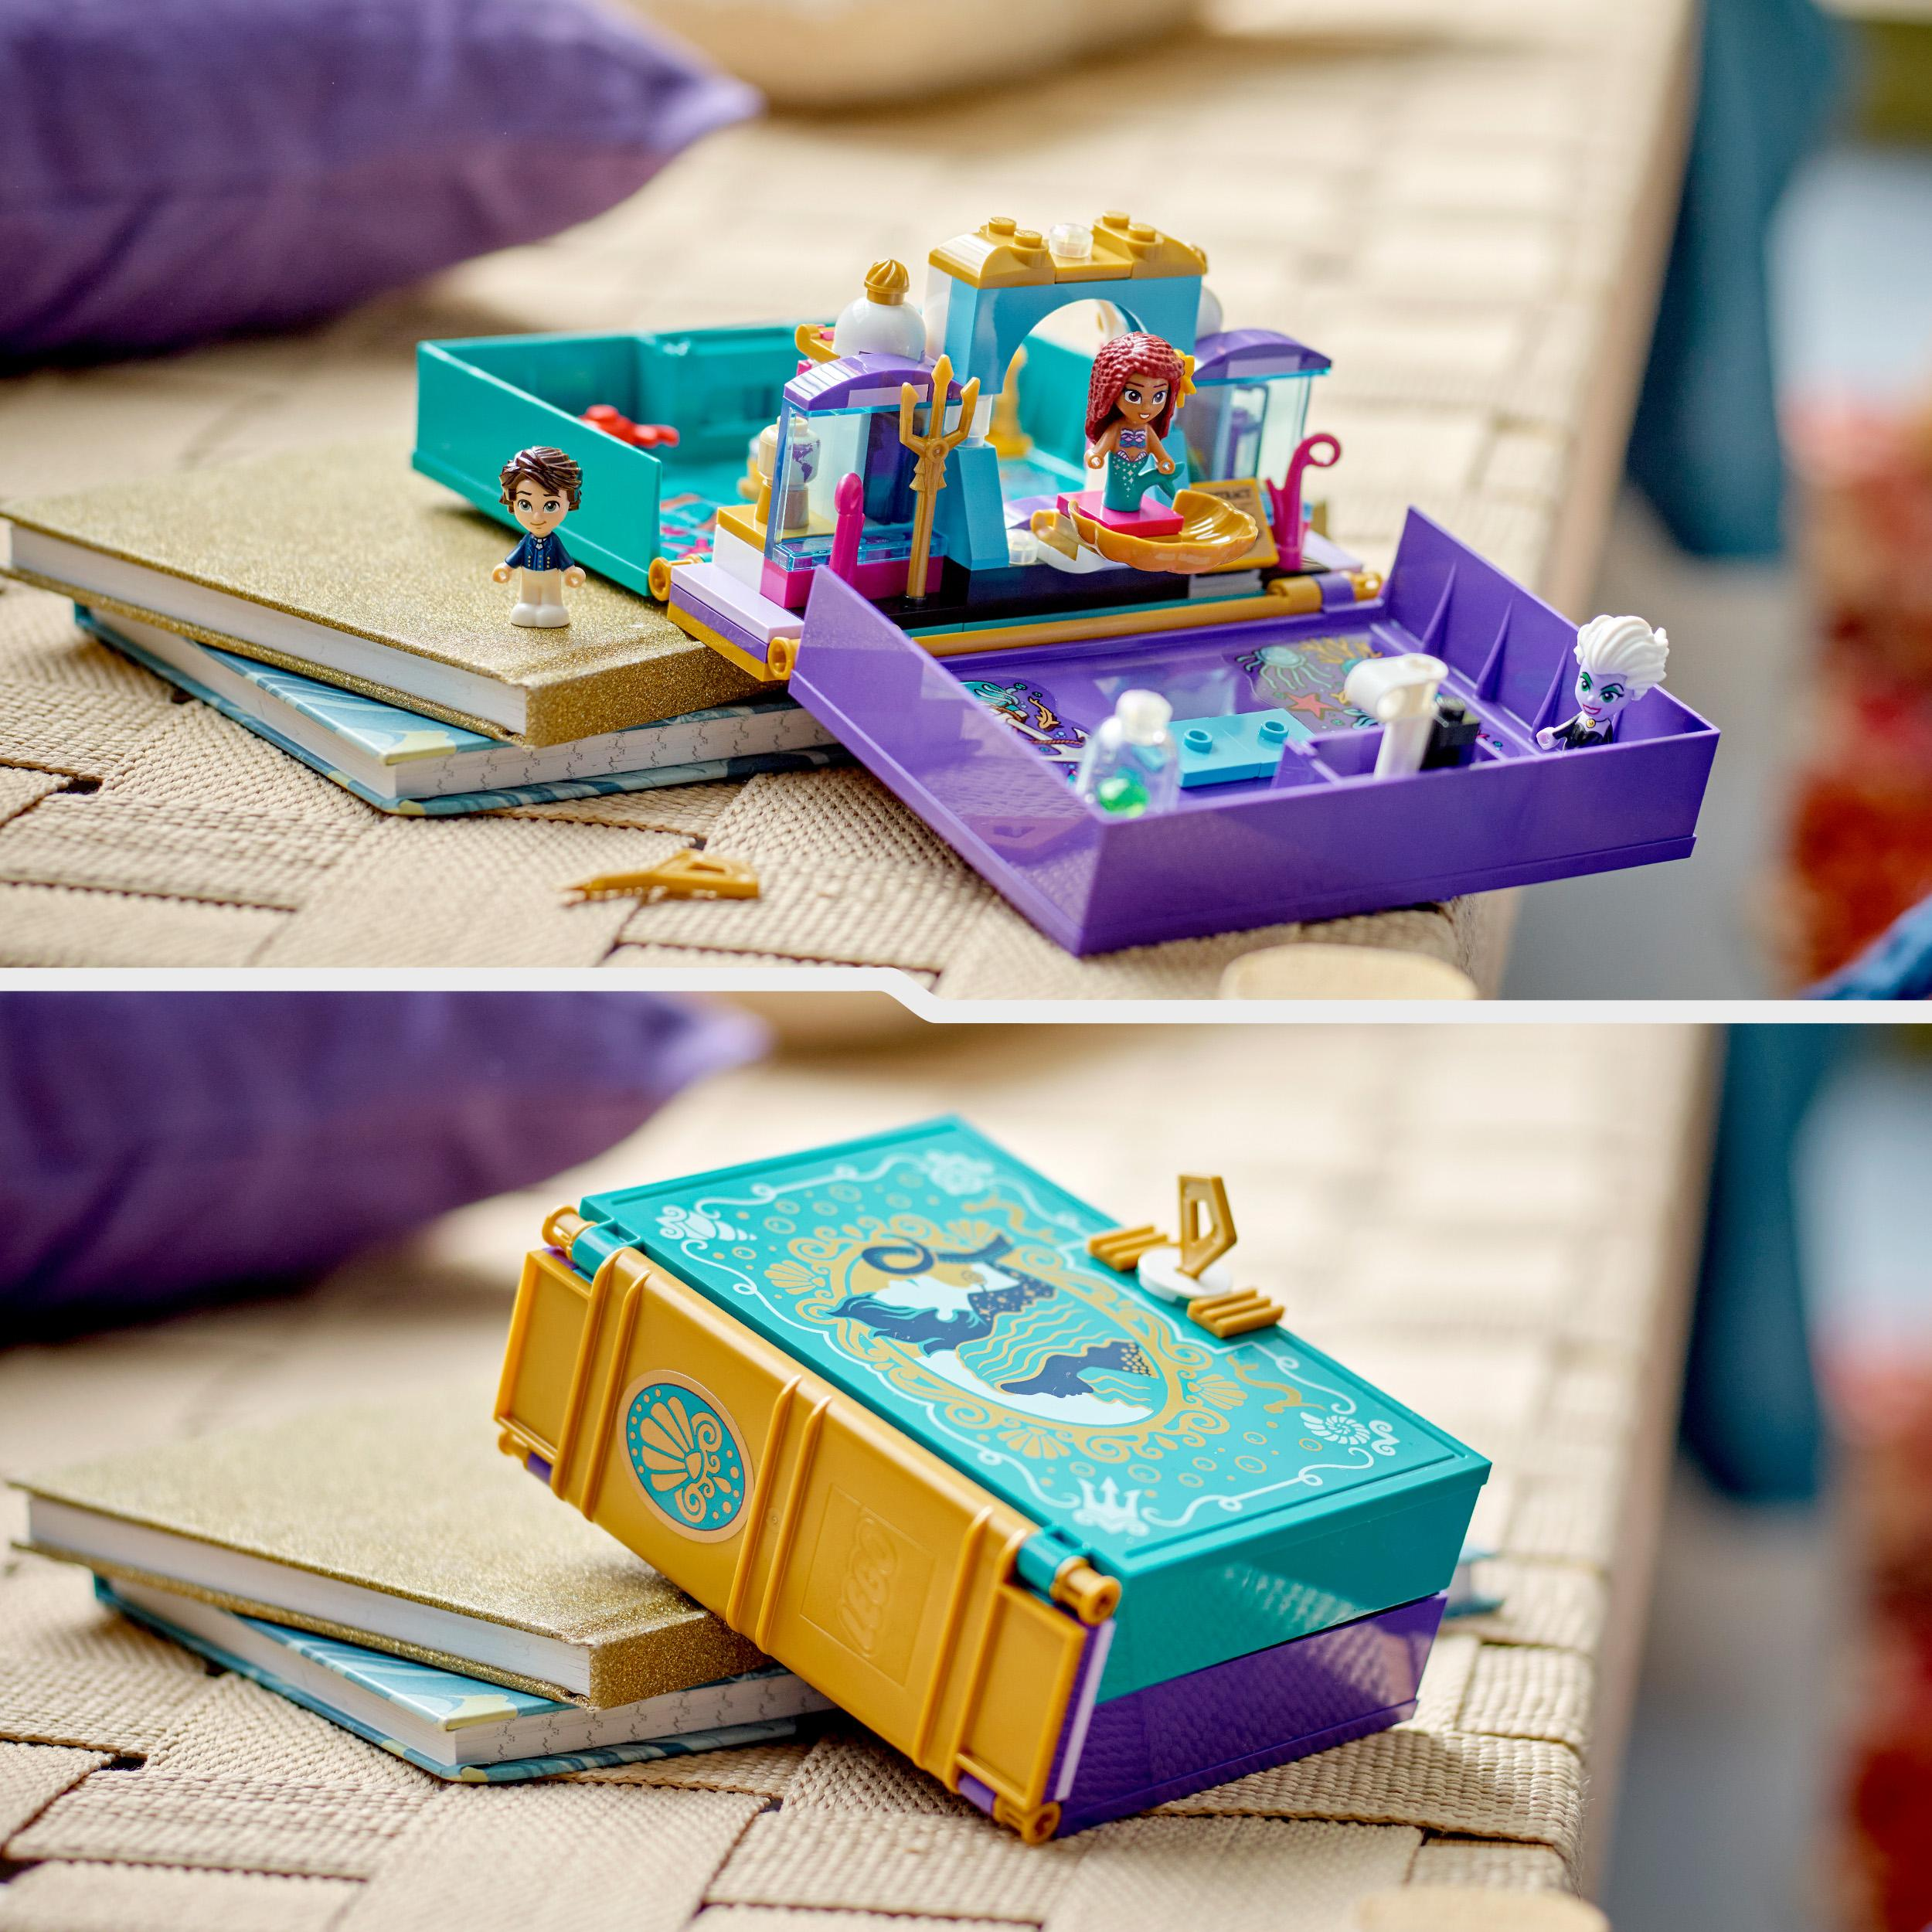 Märchenbuch 43213 kleine Princess Meerjungfrau – Mehrfarbig Bausatz, LEGO Disney Die